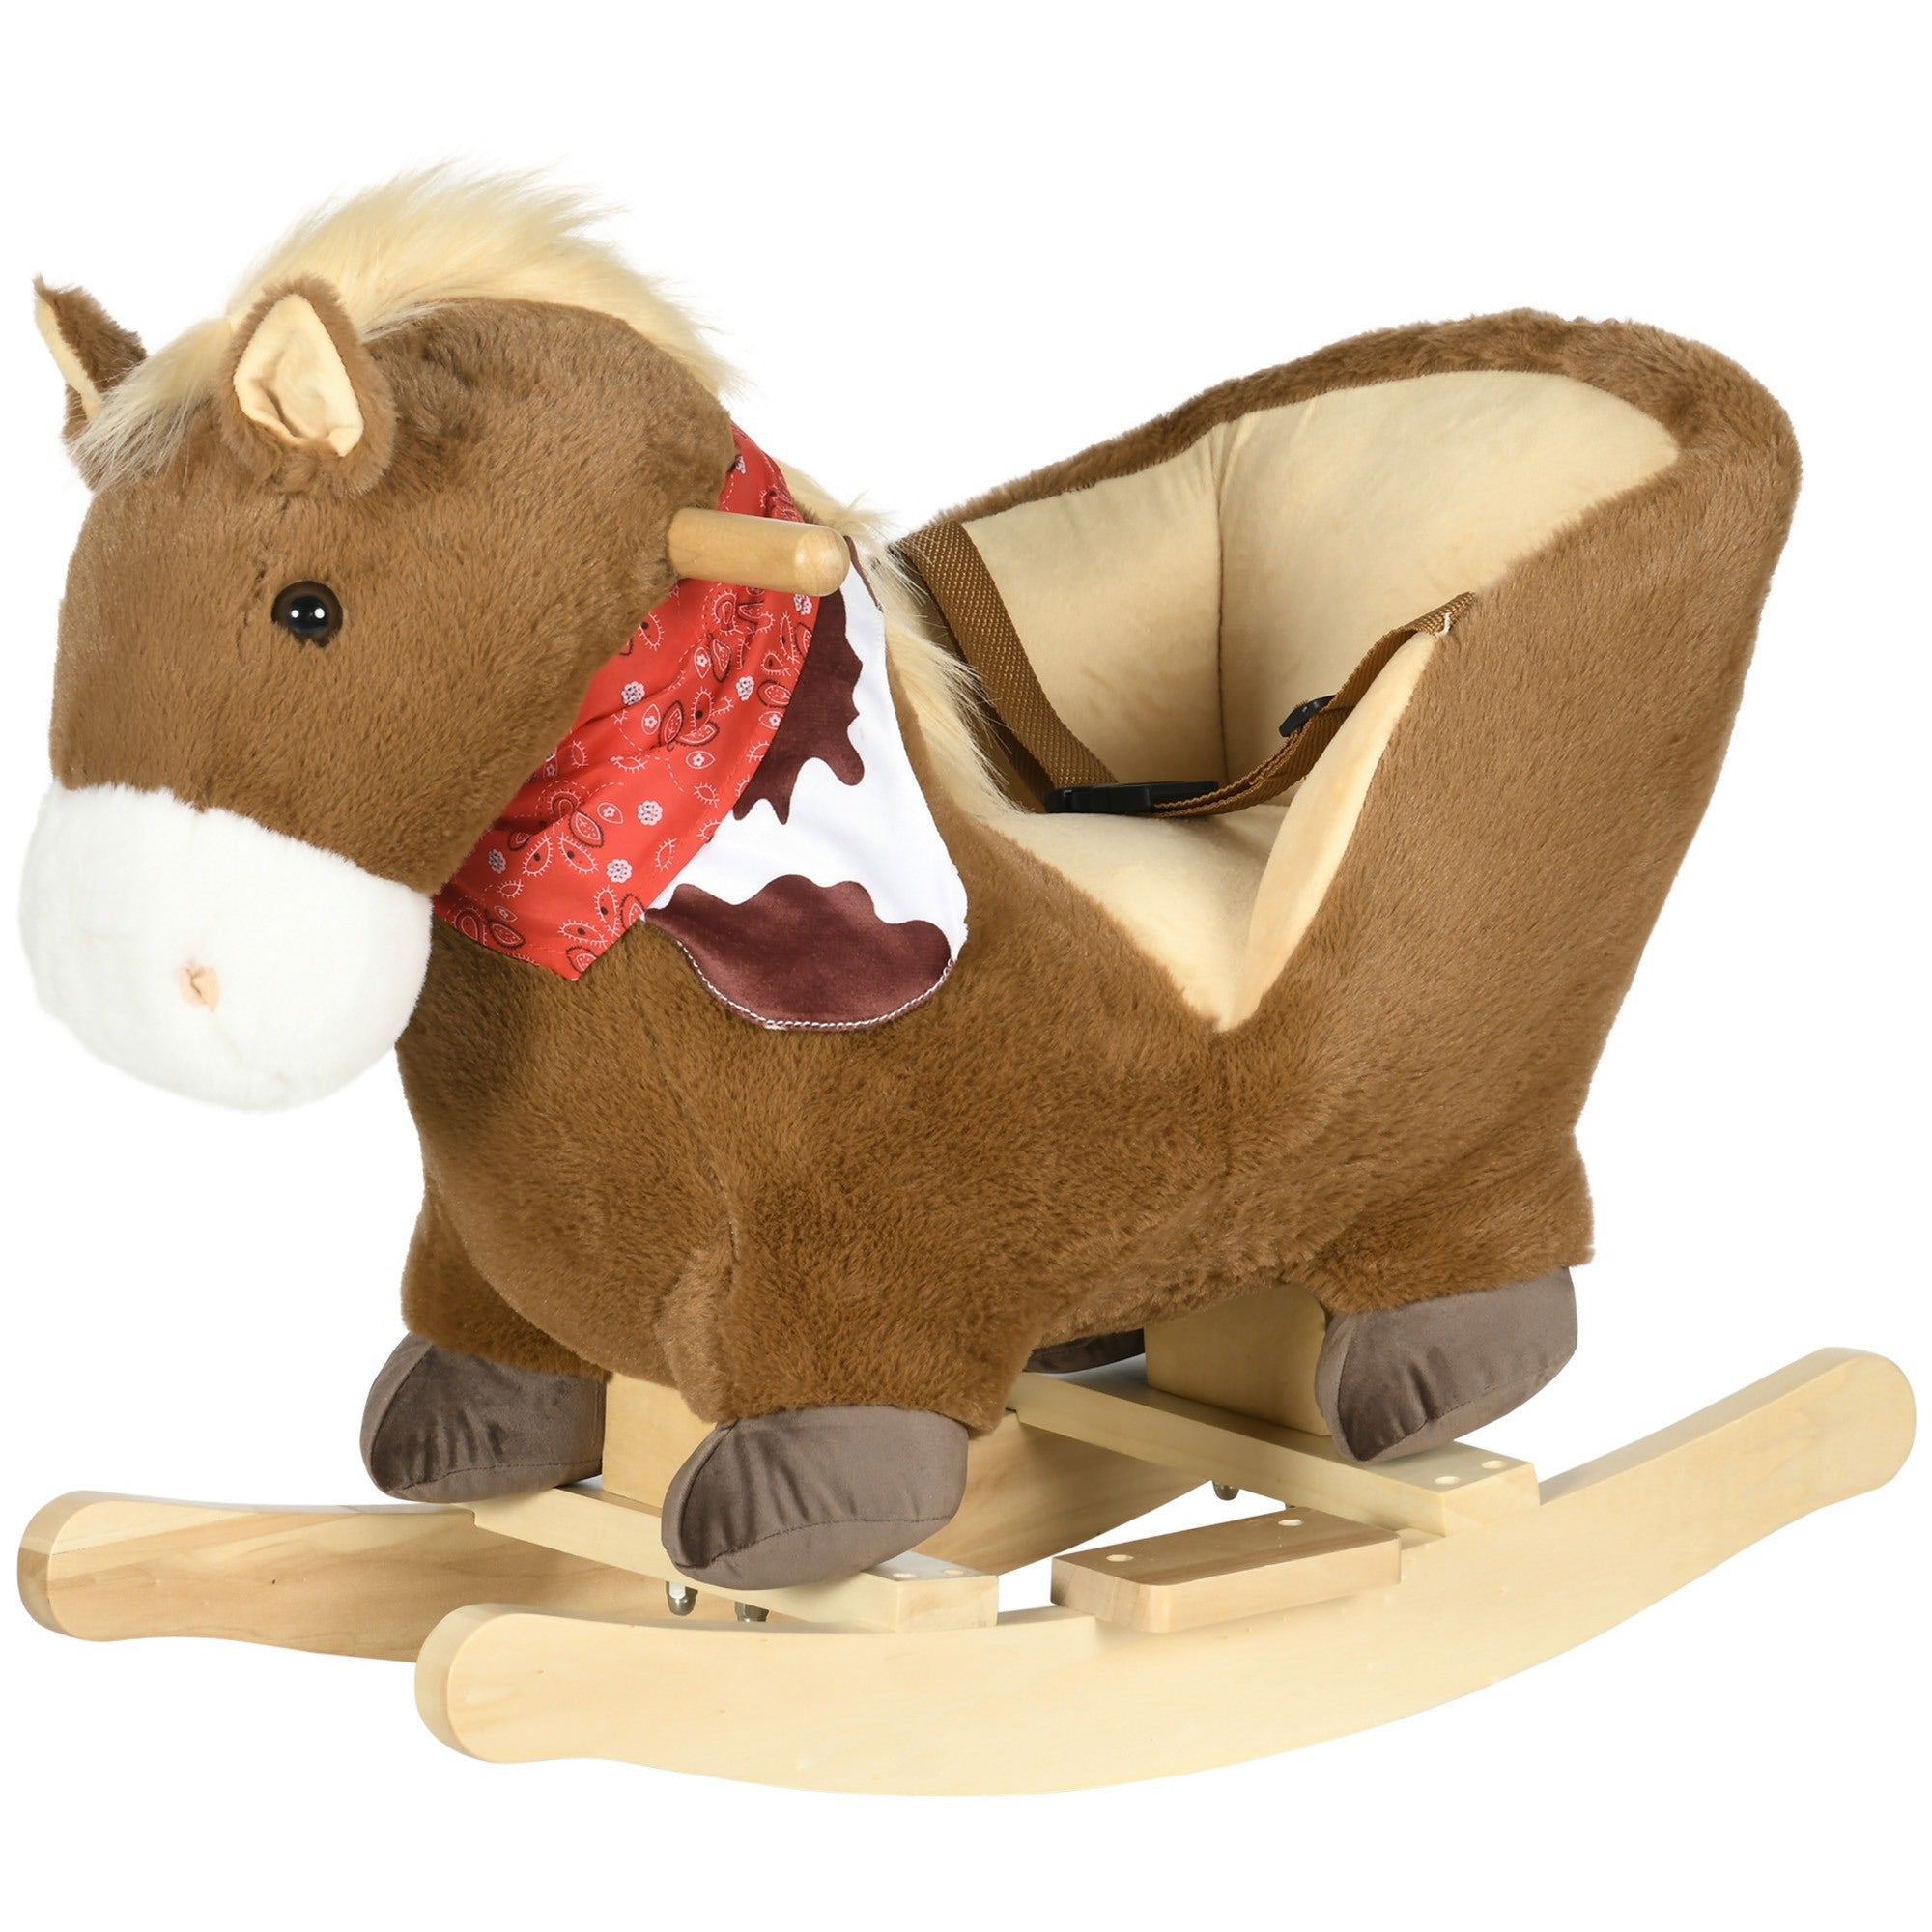 EASYCOMFORT Cavallo a Dondolo per Bambini da 18-36 Mesi con Suoni  Realistici, 60x33x50 cm, Marrone e color Legno